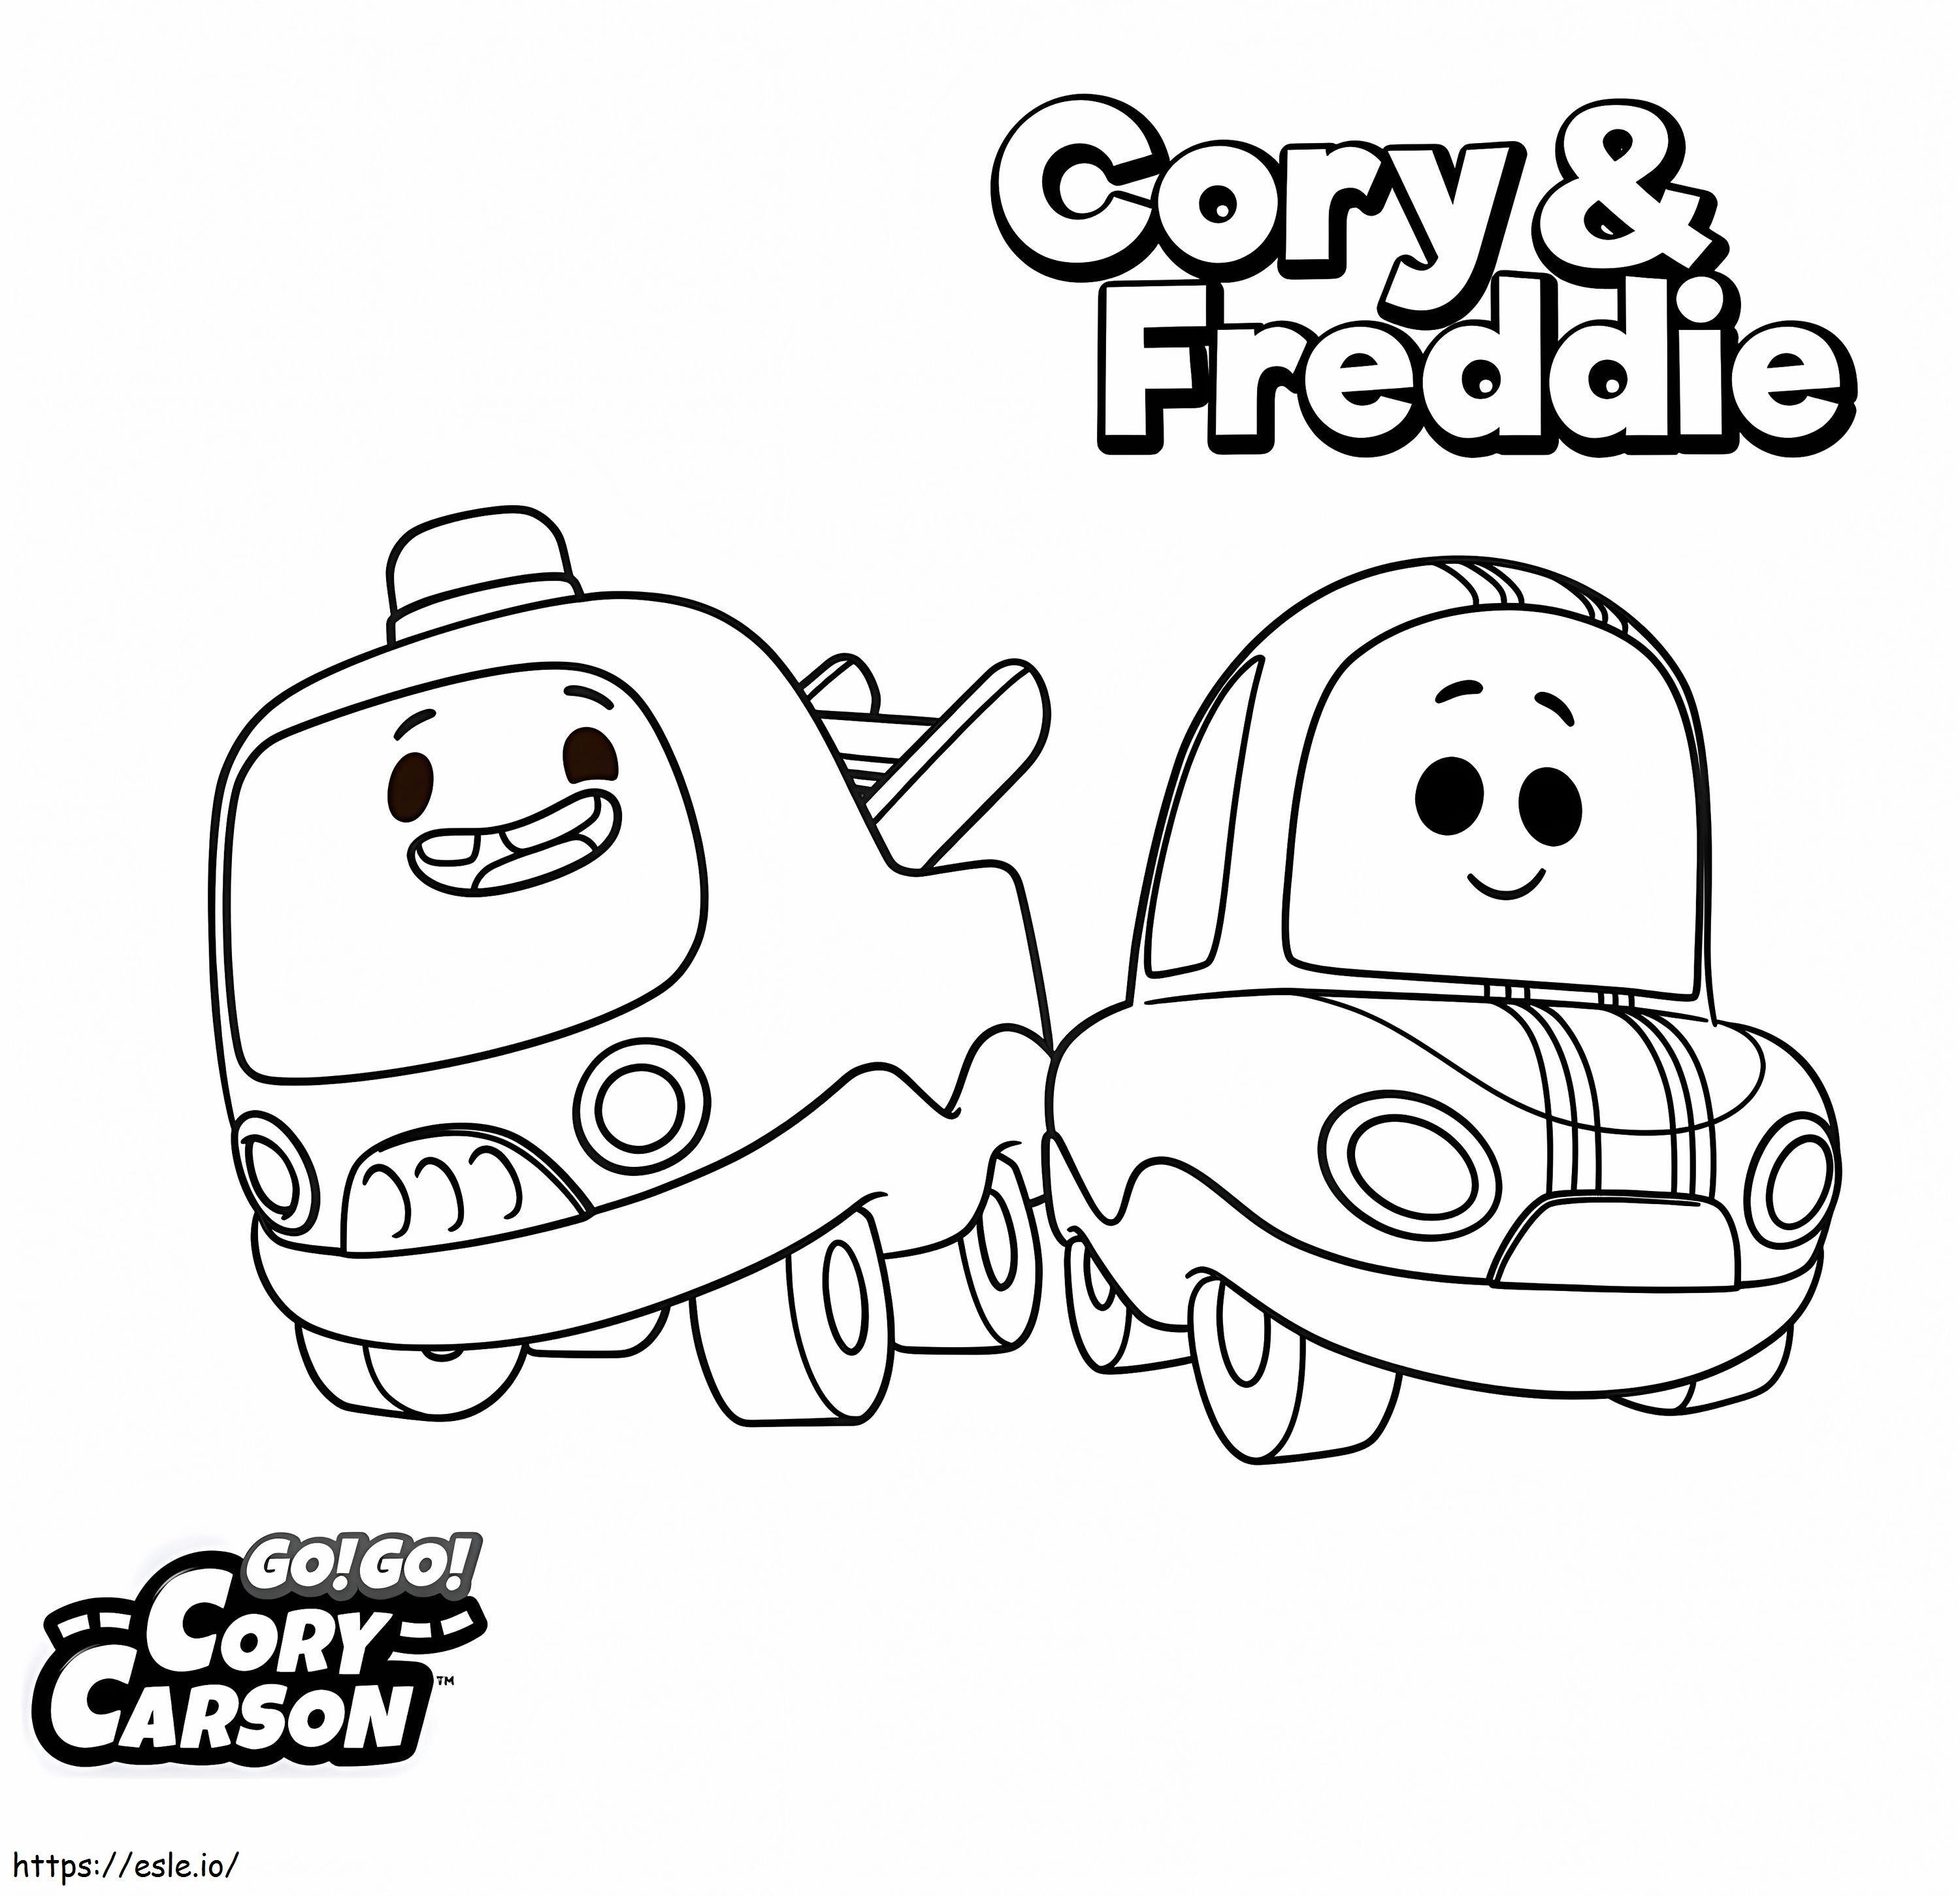 Cory y Freddie de Go Go Cory Carson para colorear